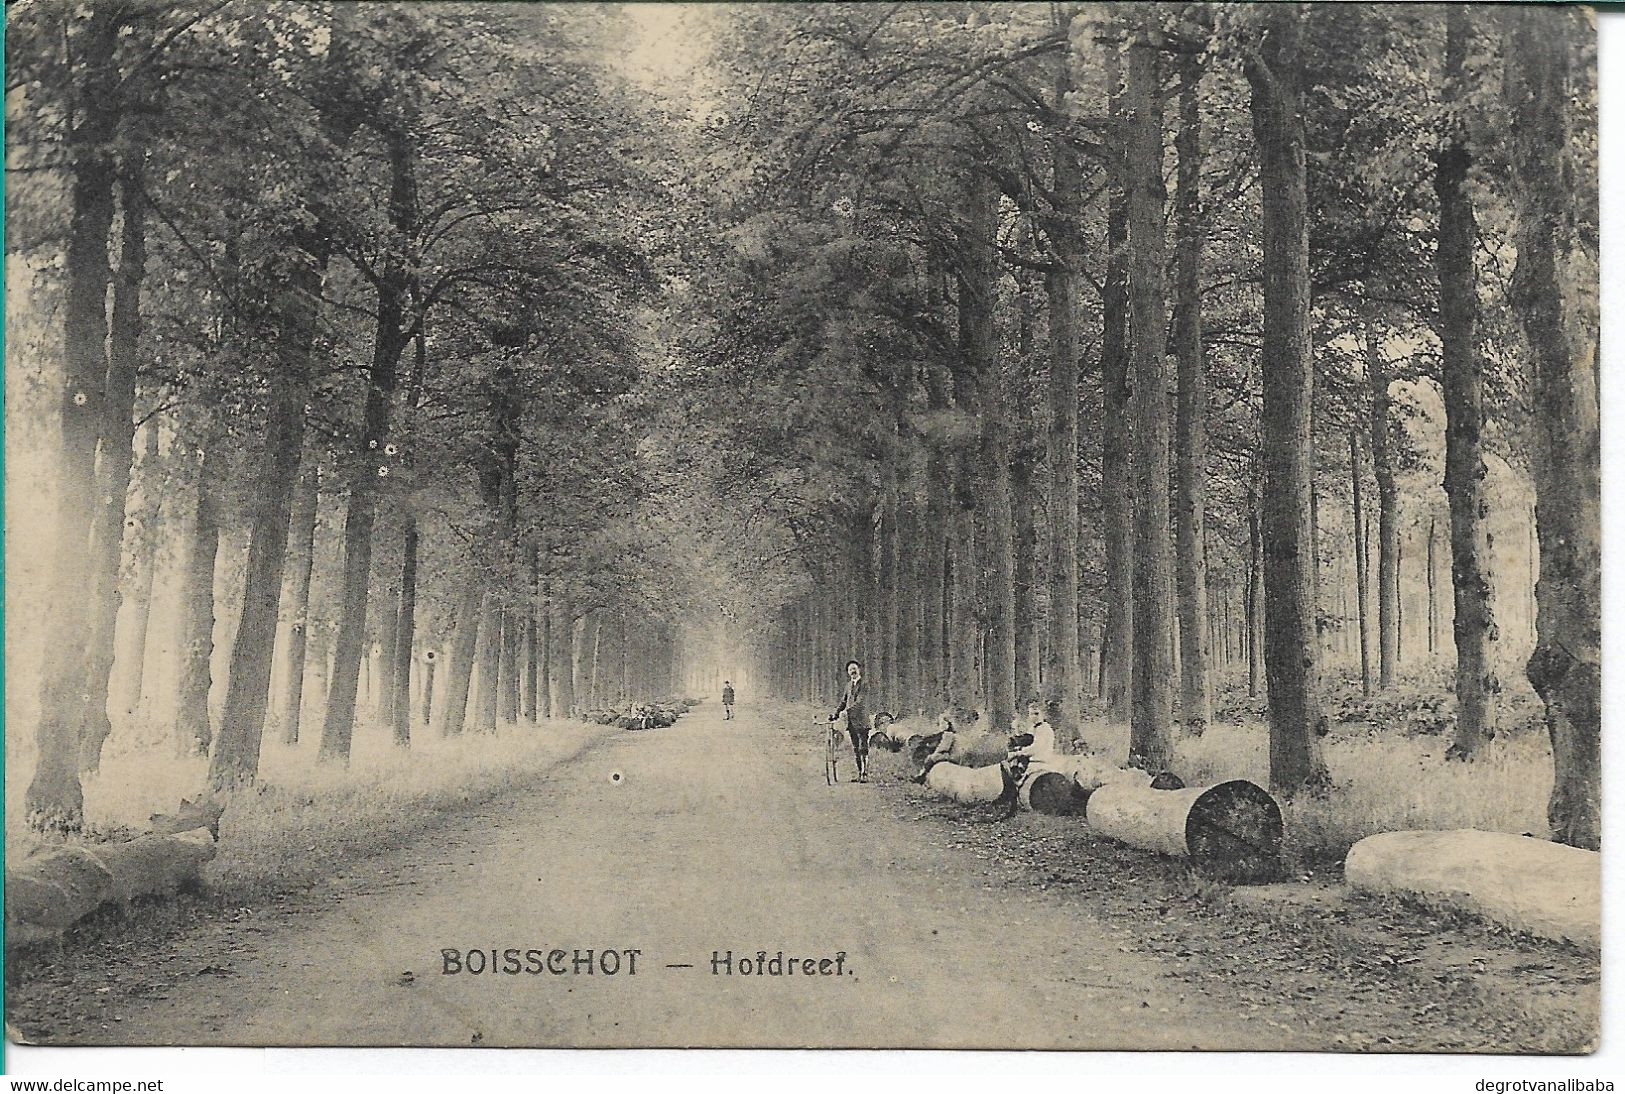 Booischot: Boisschot - Hofdreef - Heist-op-den-Berg